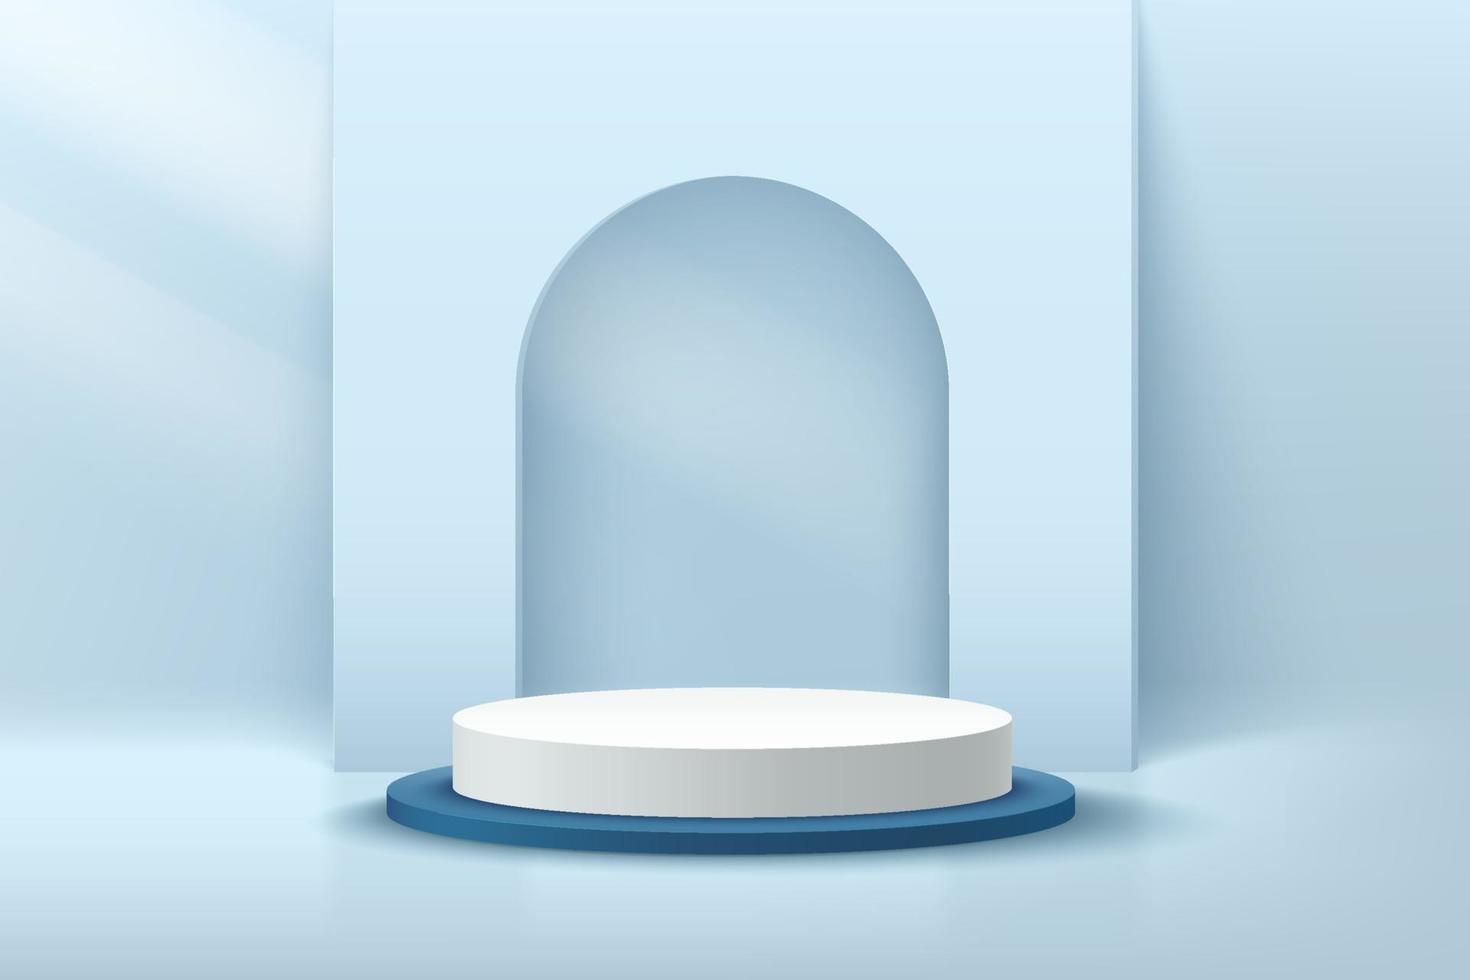 moderno pódio de pedestal de cilindro branco e azul na sala vazia azul claro. vetor abstrato renderizando forma 3d para apresentação de exibição de produtos cosméticos. sala de estúdio de cena minimalista em tons pastel.